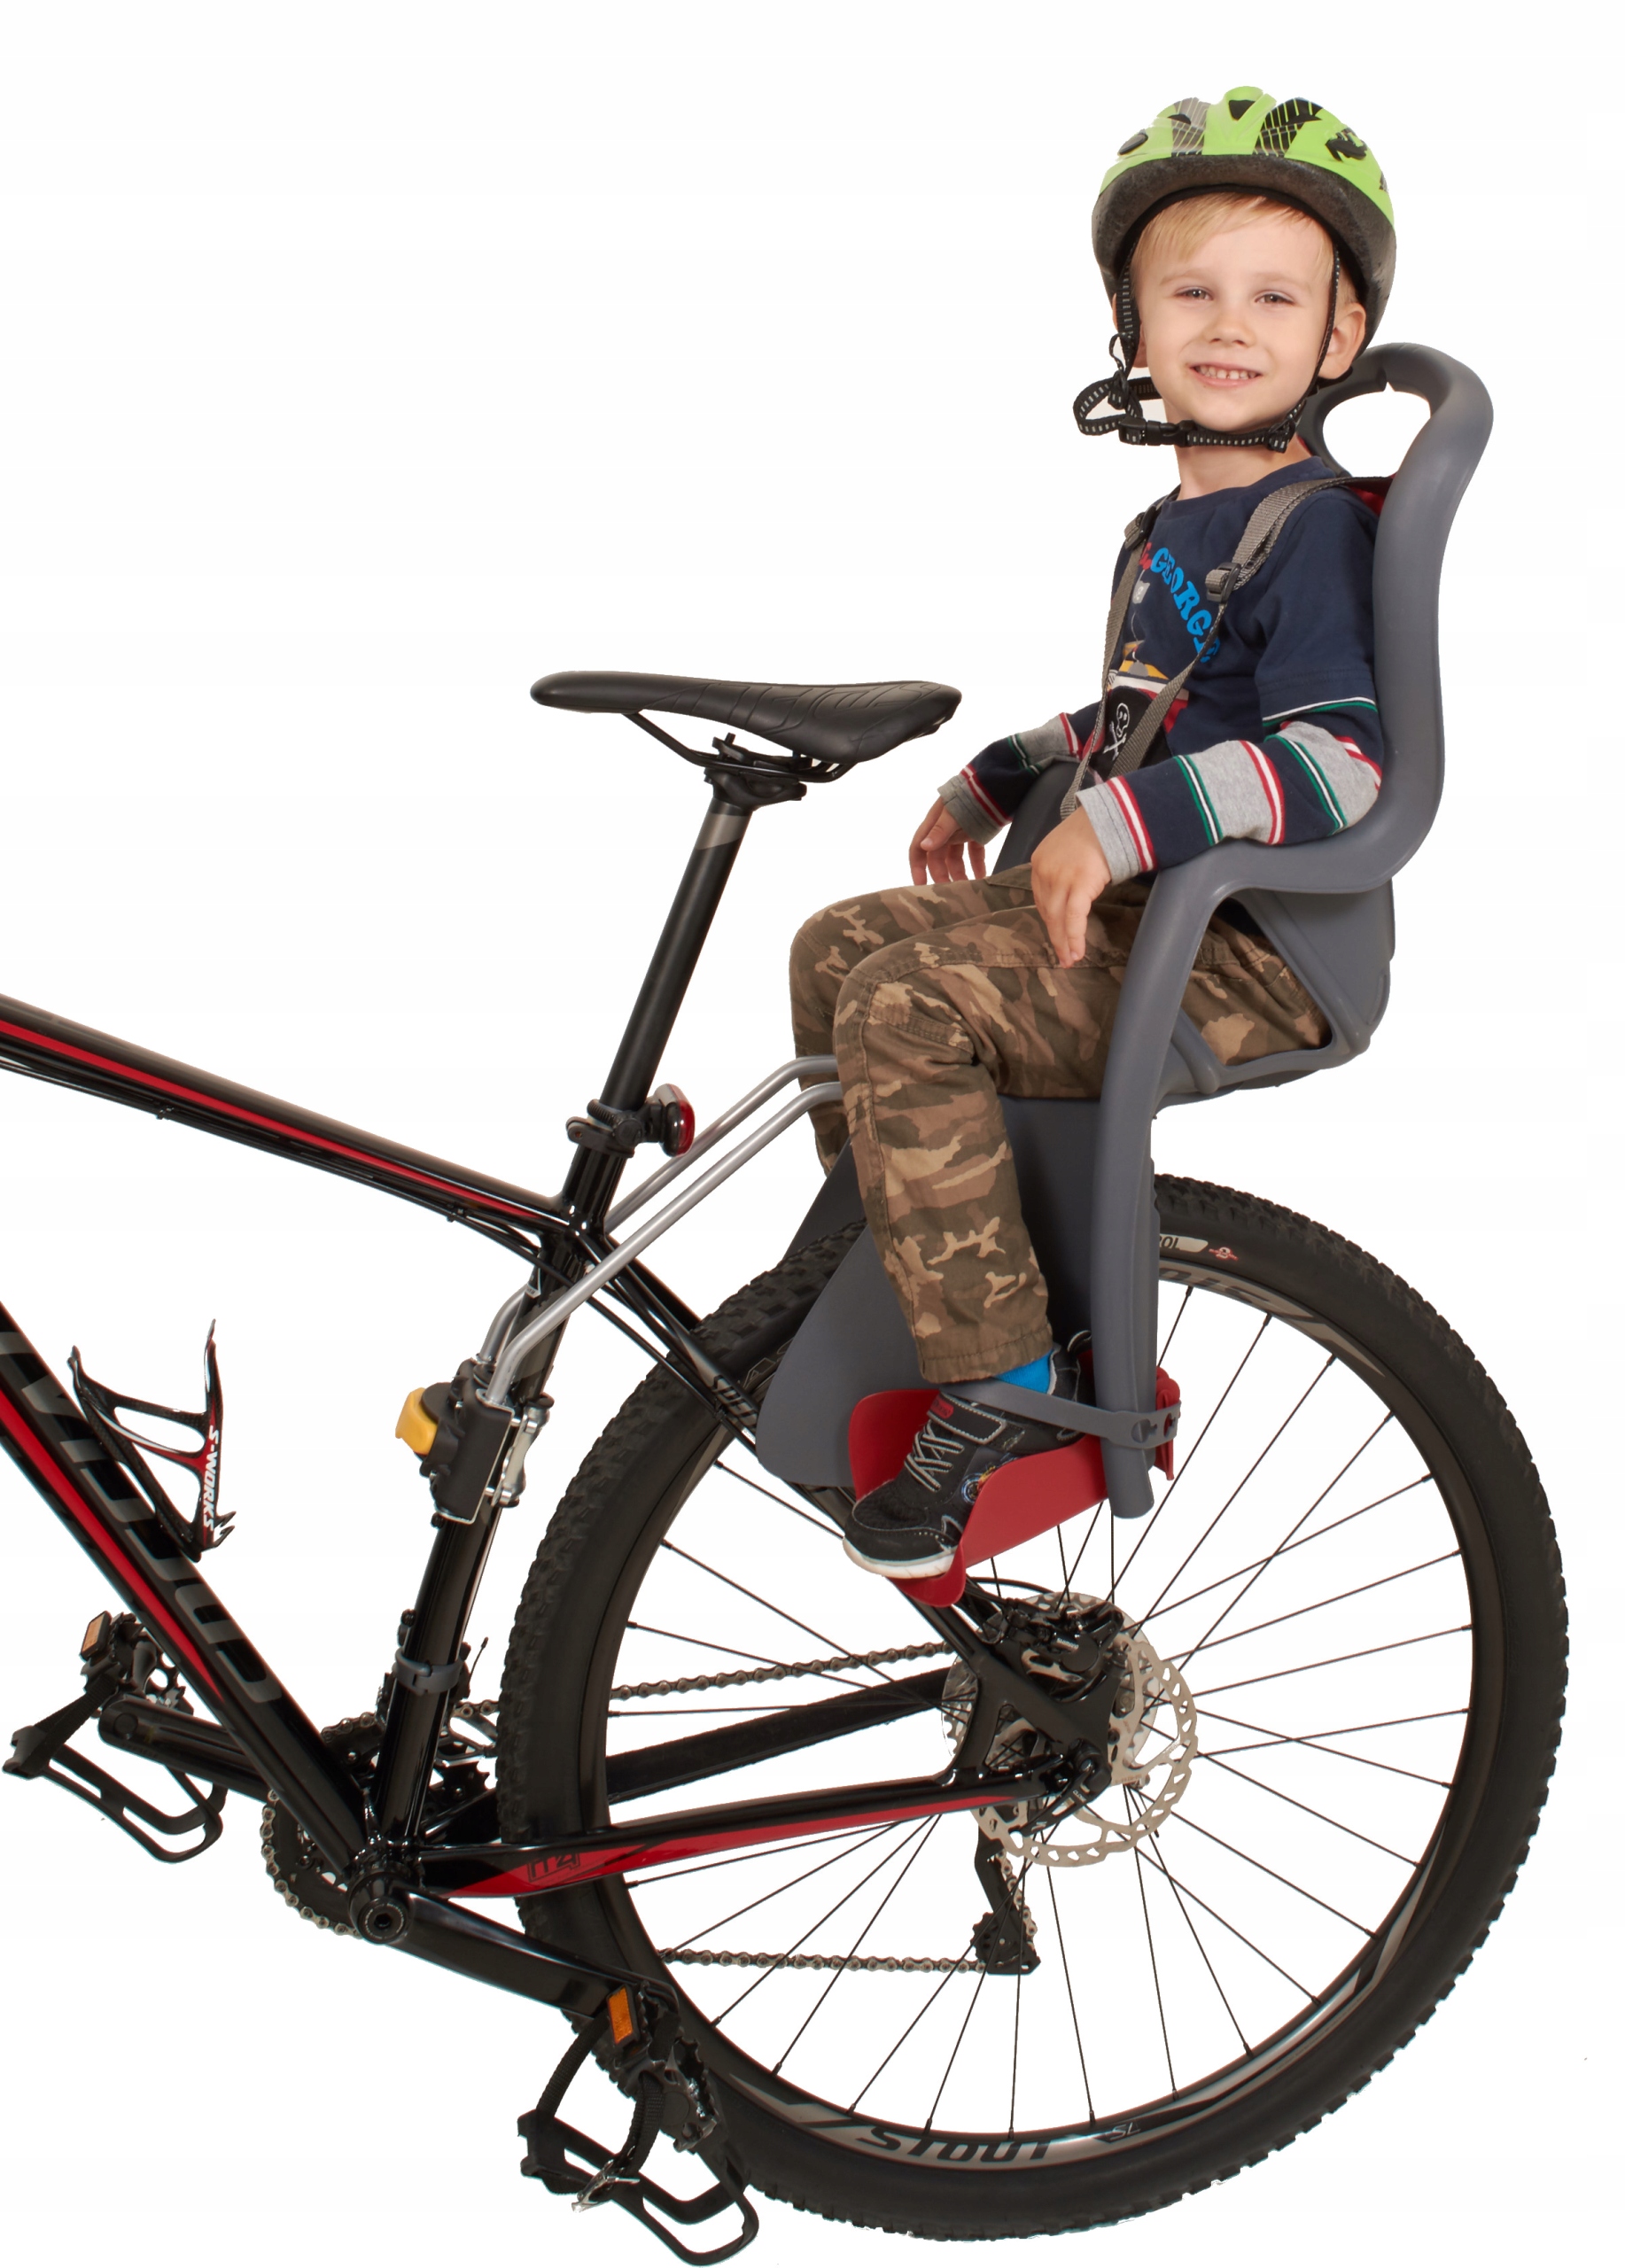 Сидушка на велосипед для ребенка. Детское велокресло Pepe. Велокресло Polisport Boodie. Детское кресло Bellelli на велосипед вперед. Сиденье для ребенка на велосипед.